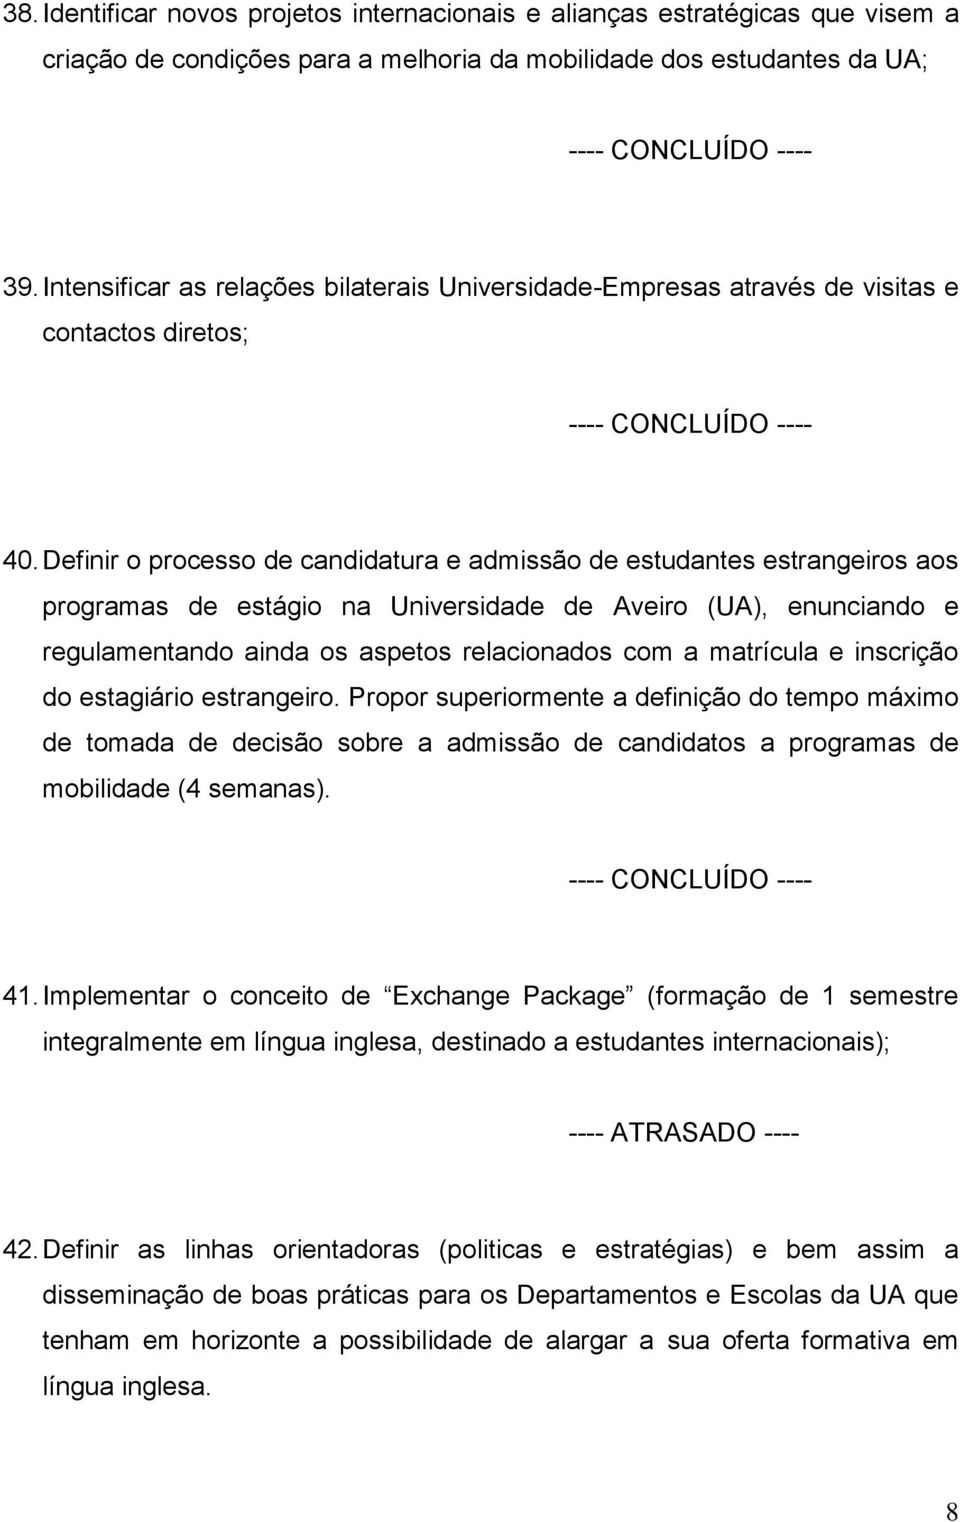 Definir o processo de candidatura e admissão de estudantes estrangeiros aos programas de estágio na Universidade de Aveiro (UA), enunciando e regulamentando ainda os aspetos relacionados com a